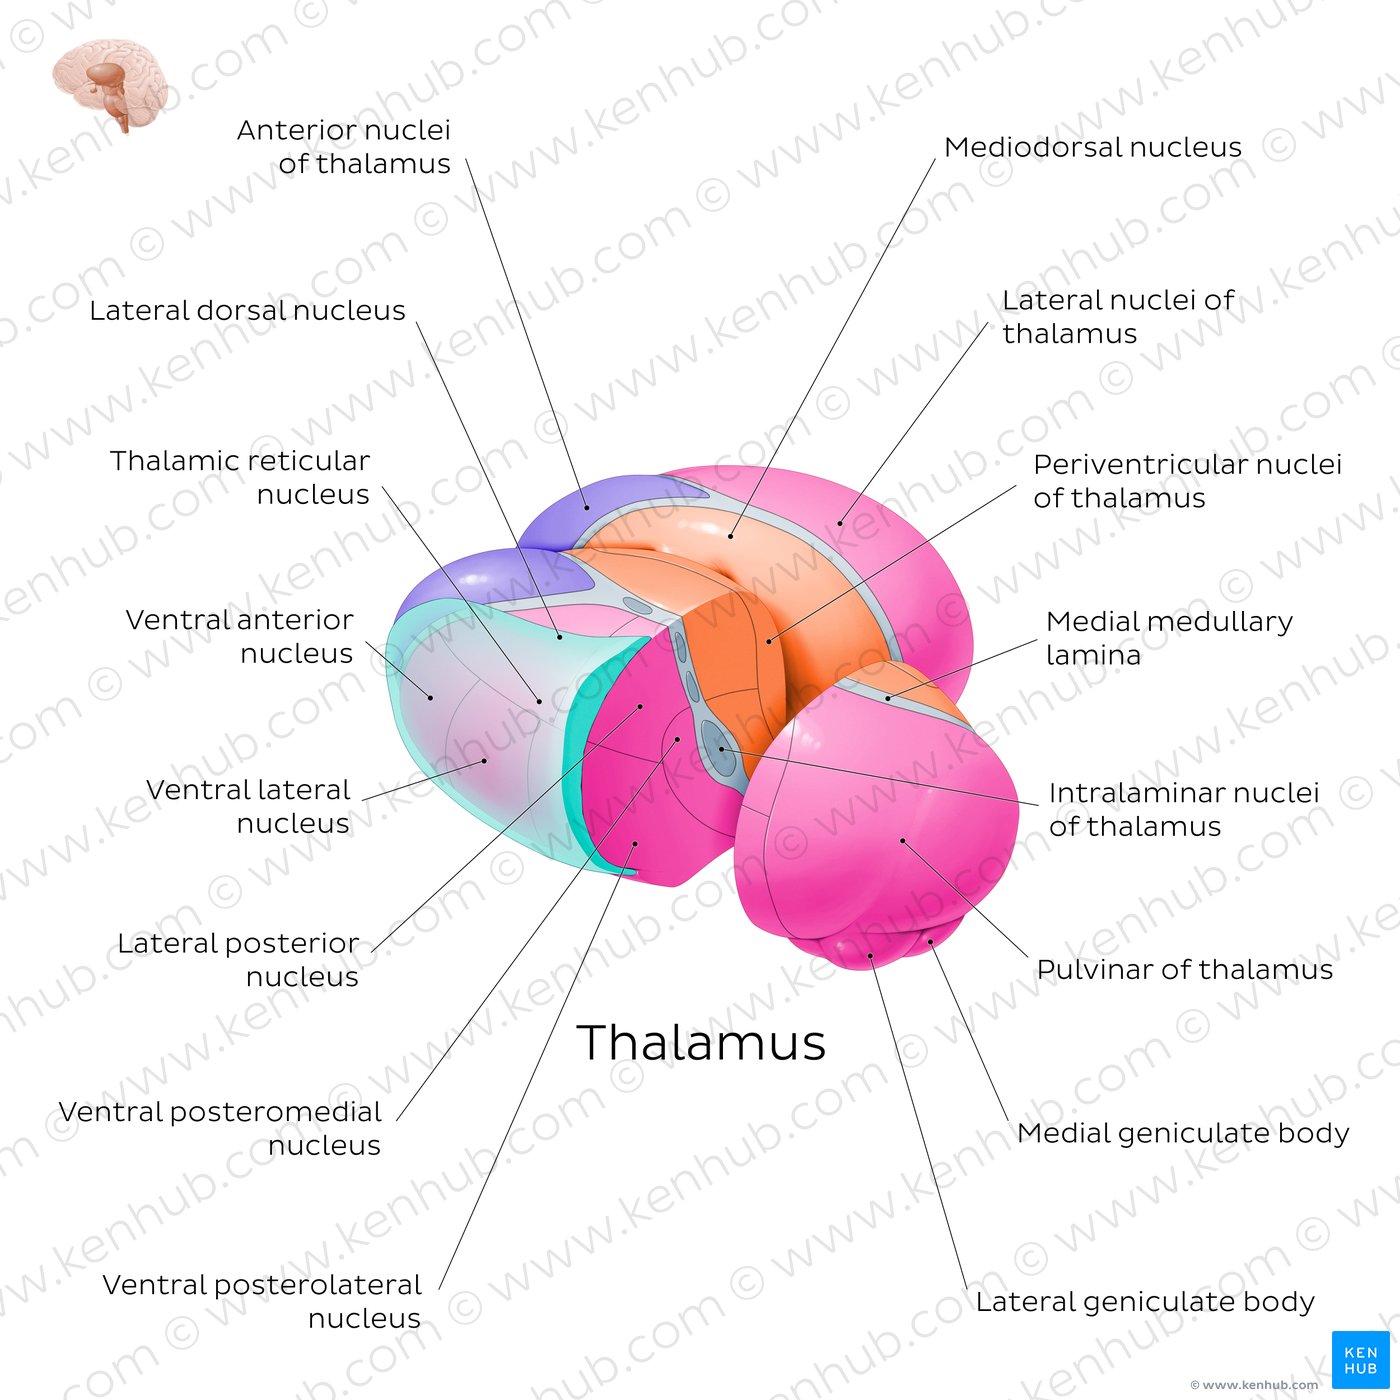 Thalamic nuclei